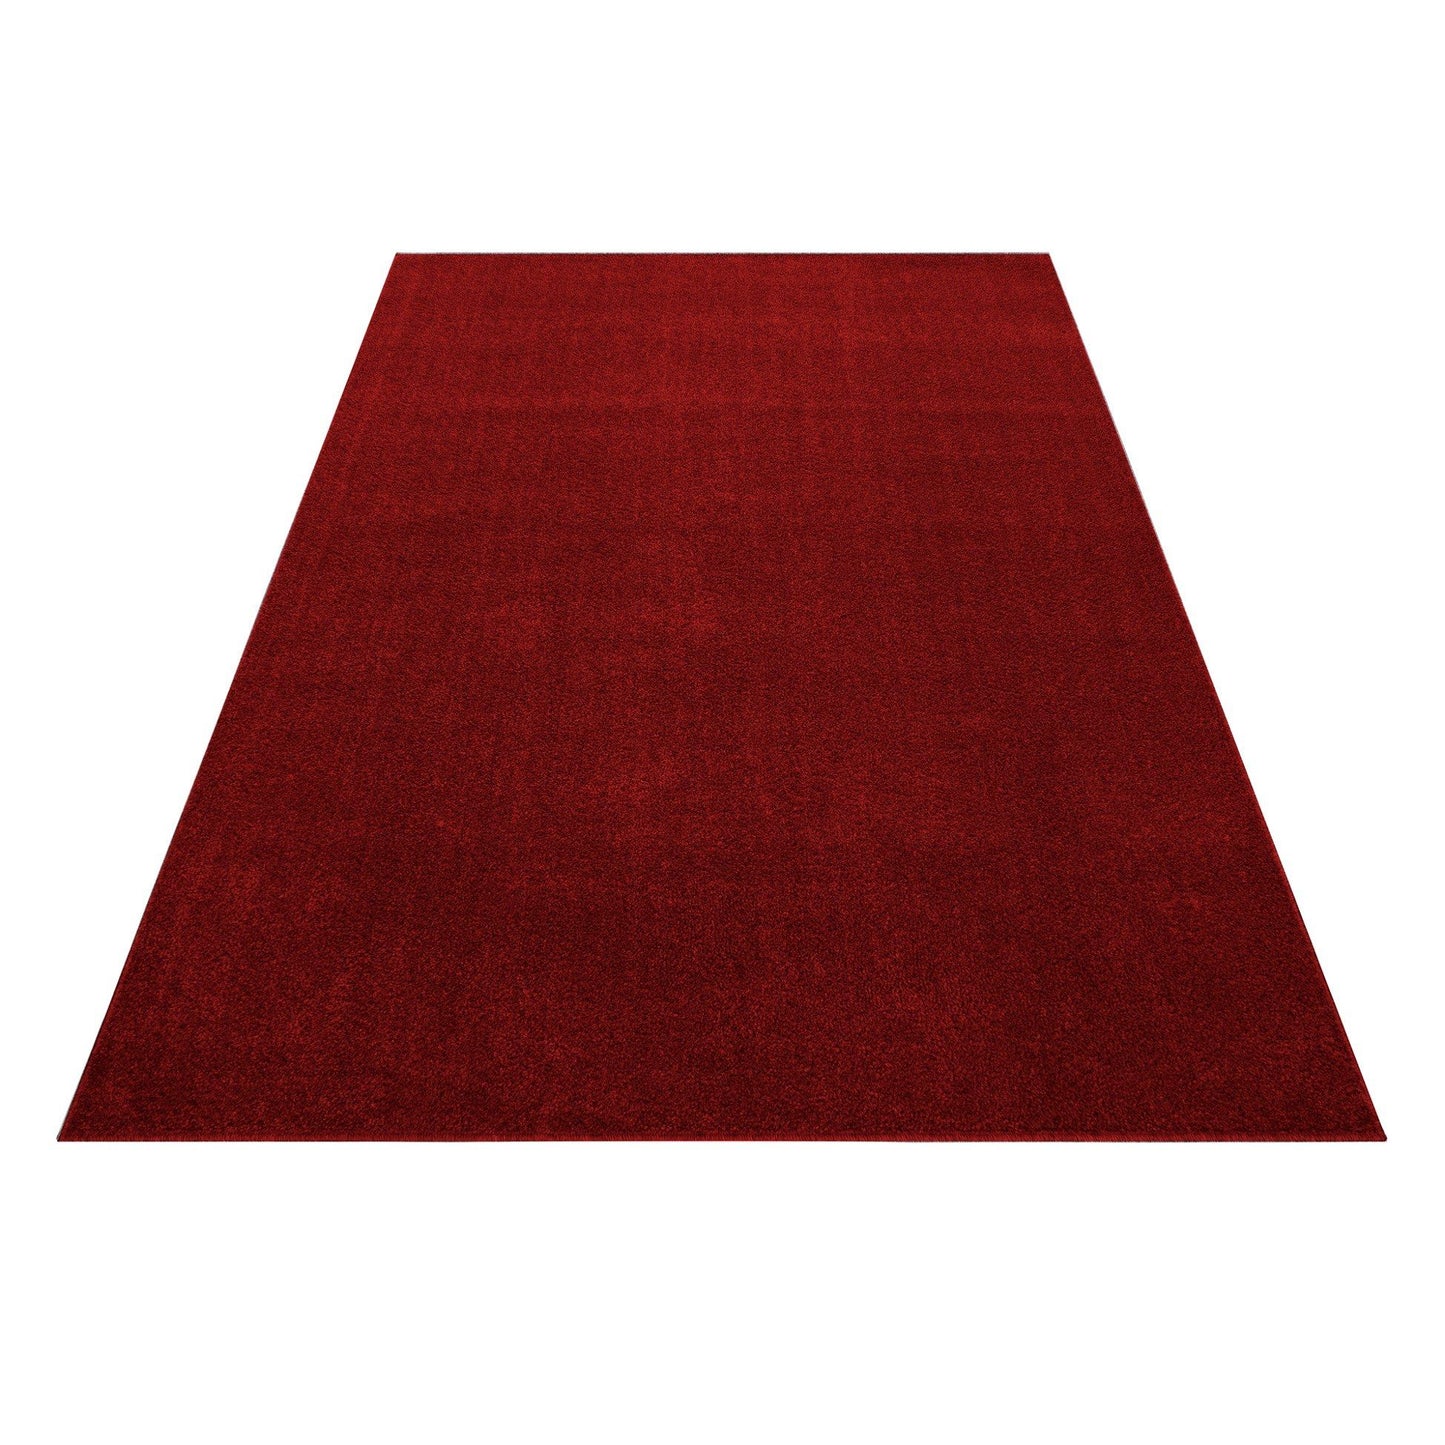 ATA7000RED Tæppe (60 x 100) - Rød